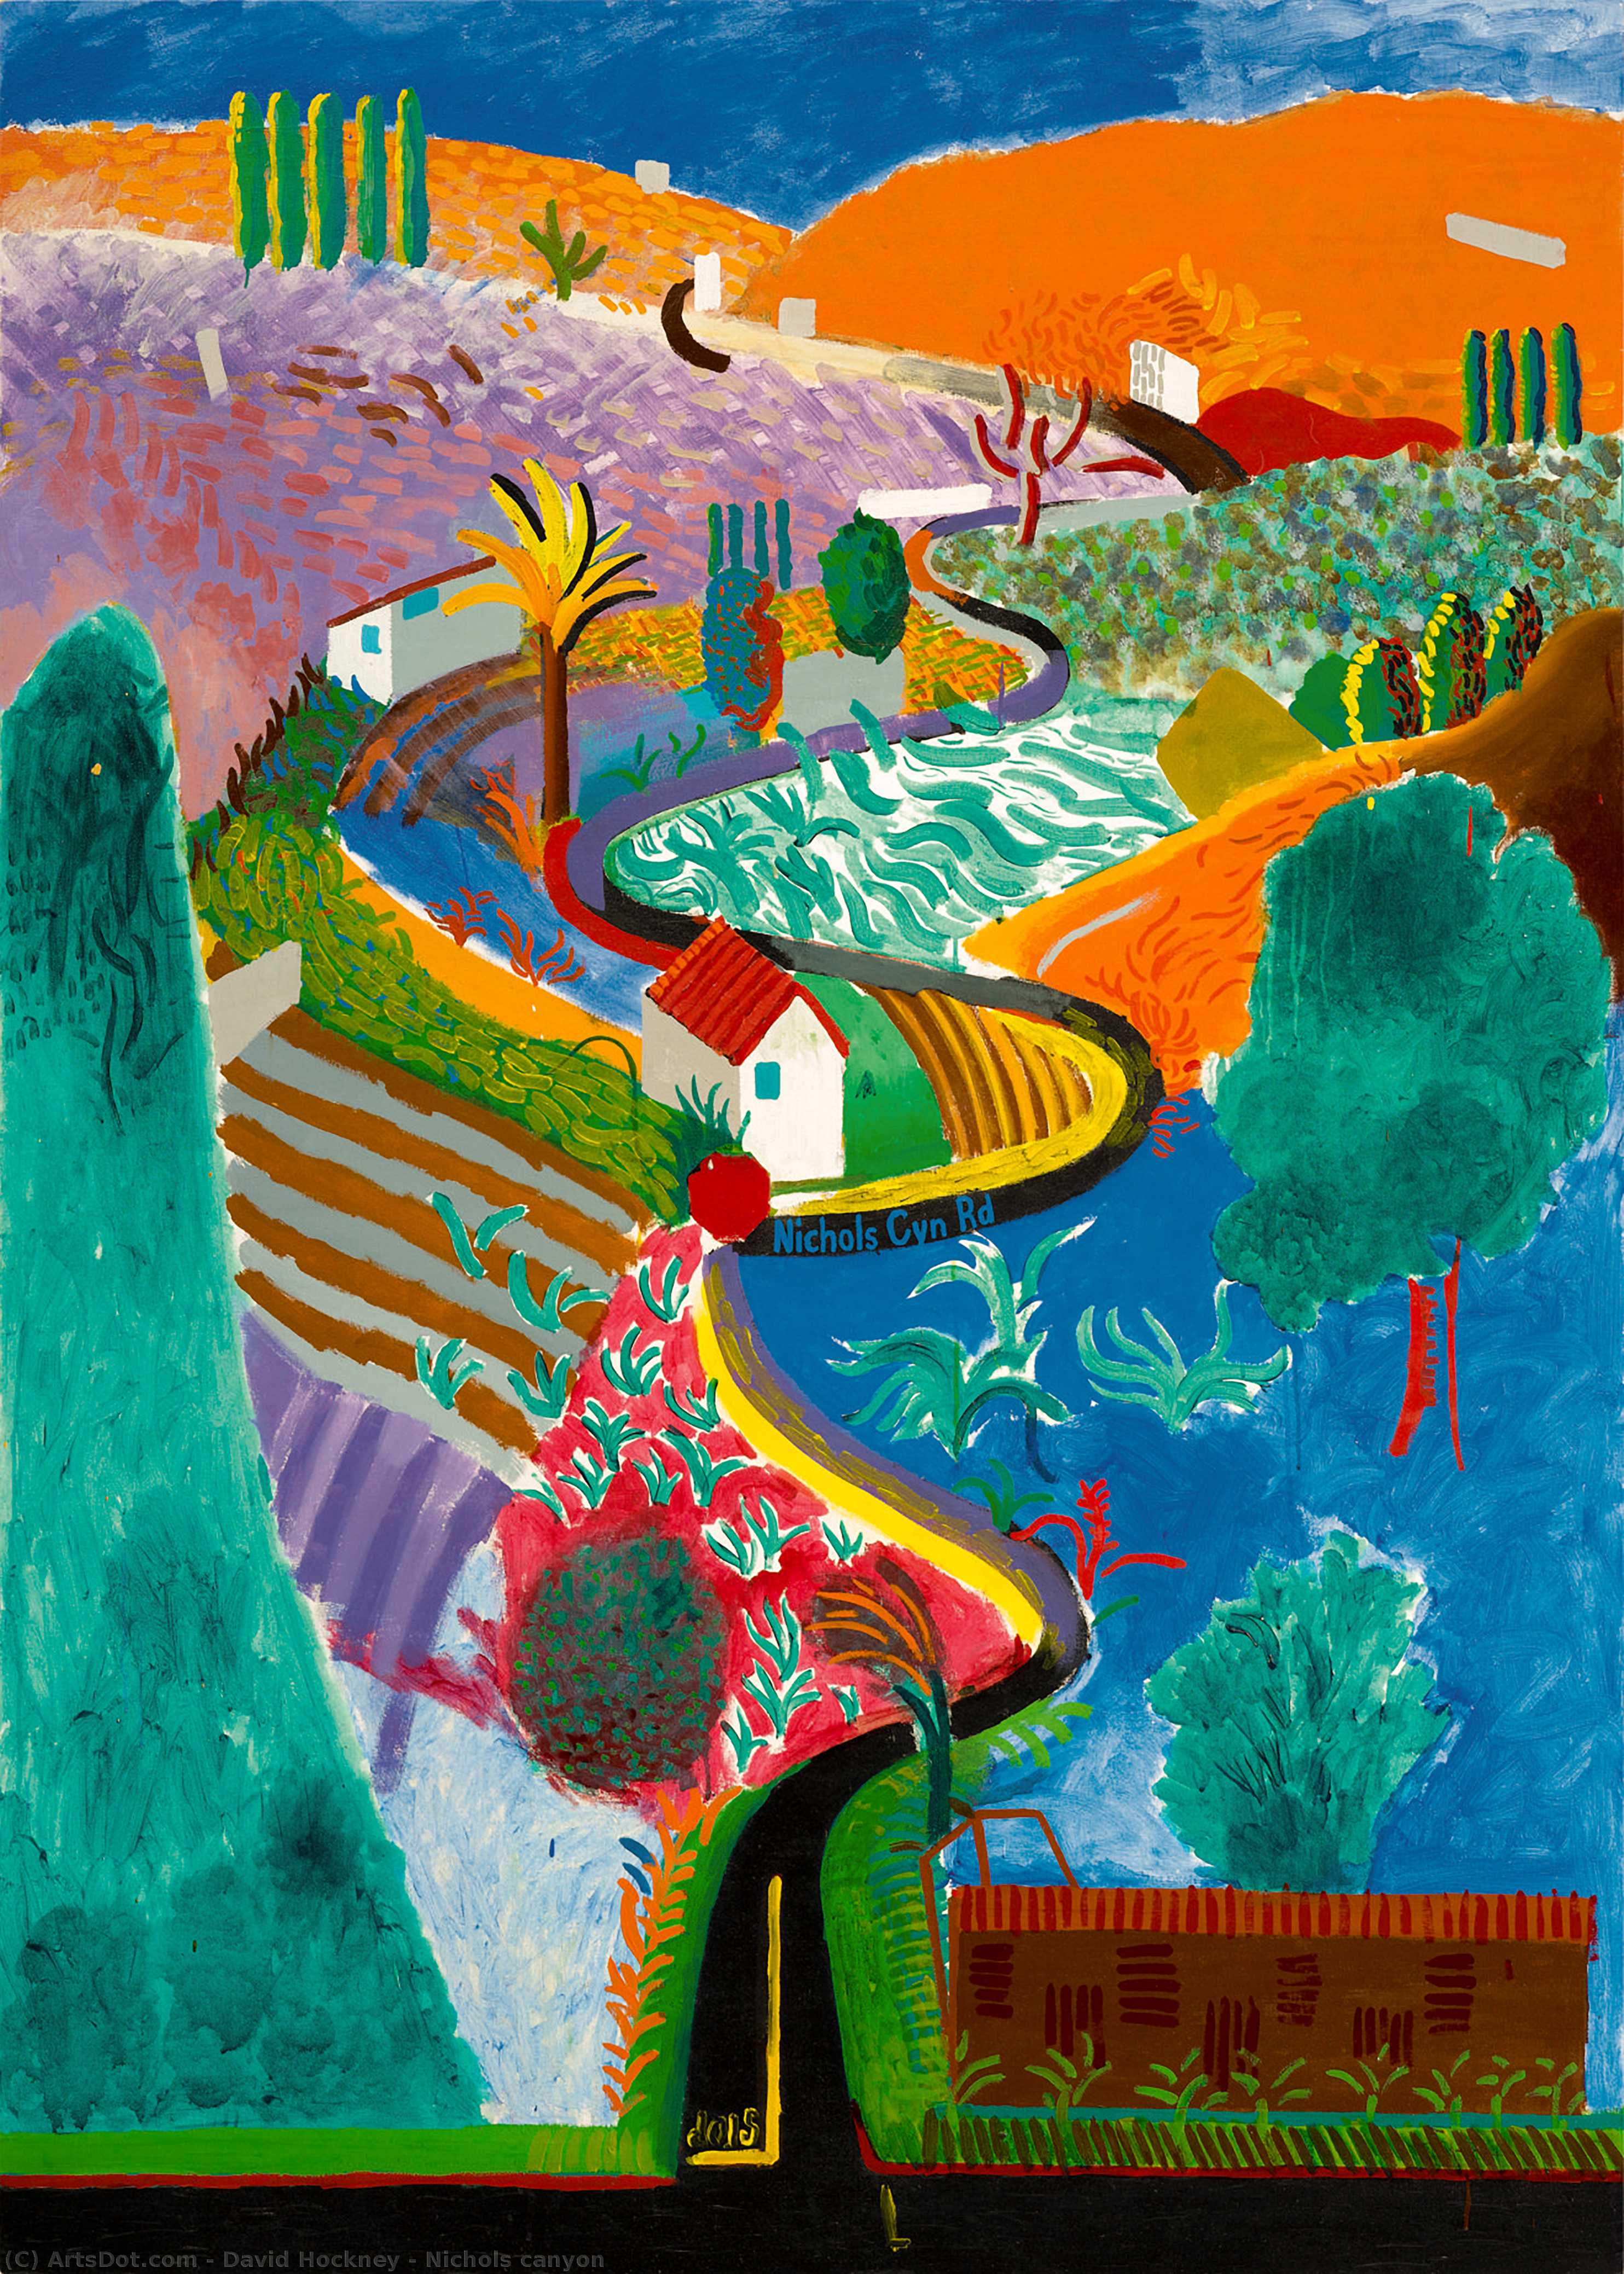 Wikioo.org - Bách khoa toàn thư về mỹ thuật - Vẽ tranh, Tác phẩm nghệ thuật David Hockney - Nichols canyon